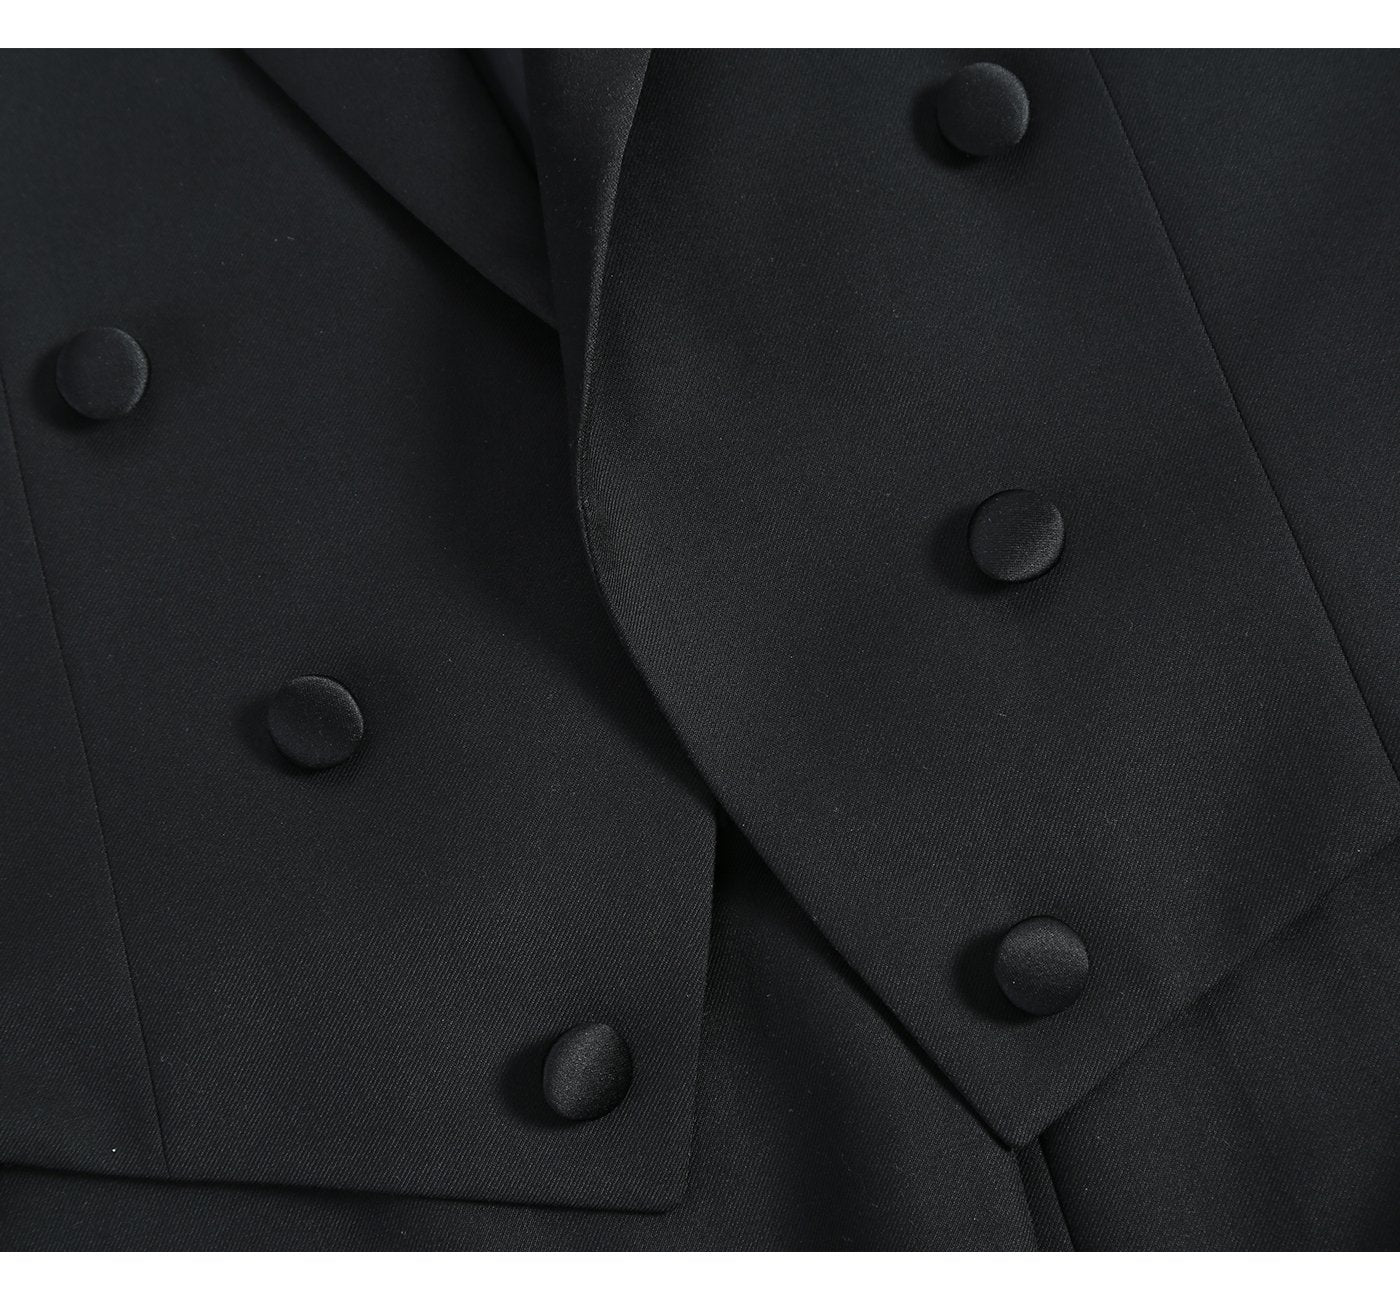 Men’s Classic Fit Tuxedo Peak Lapel Full Dress Suit 4